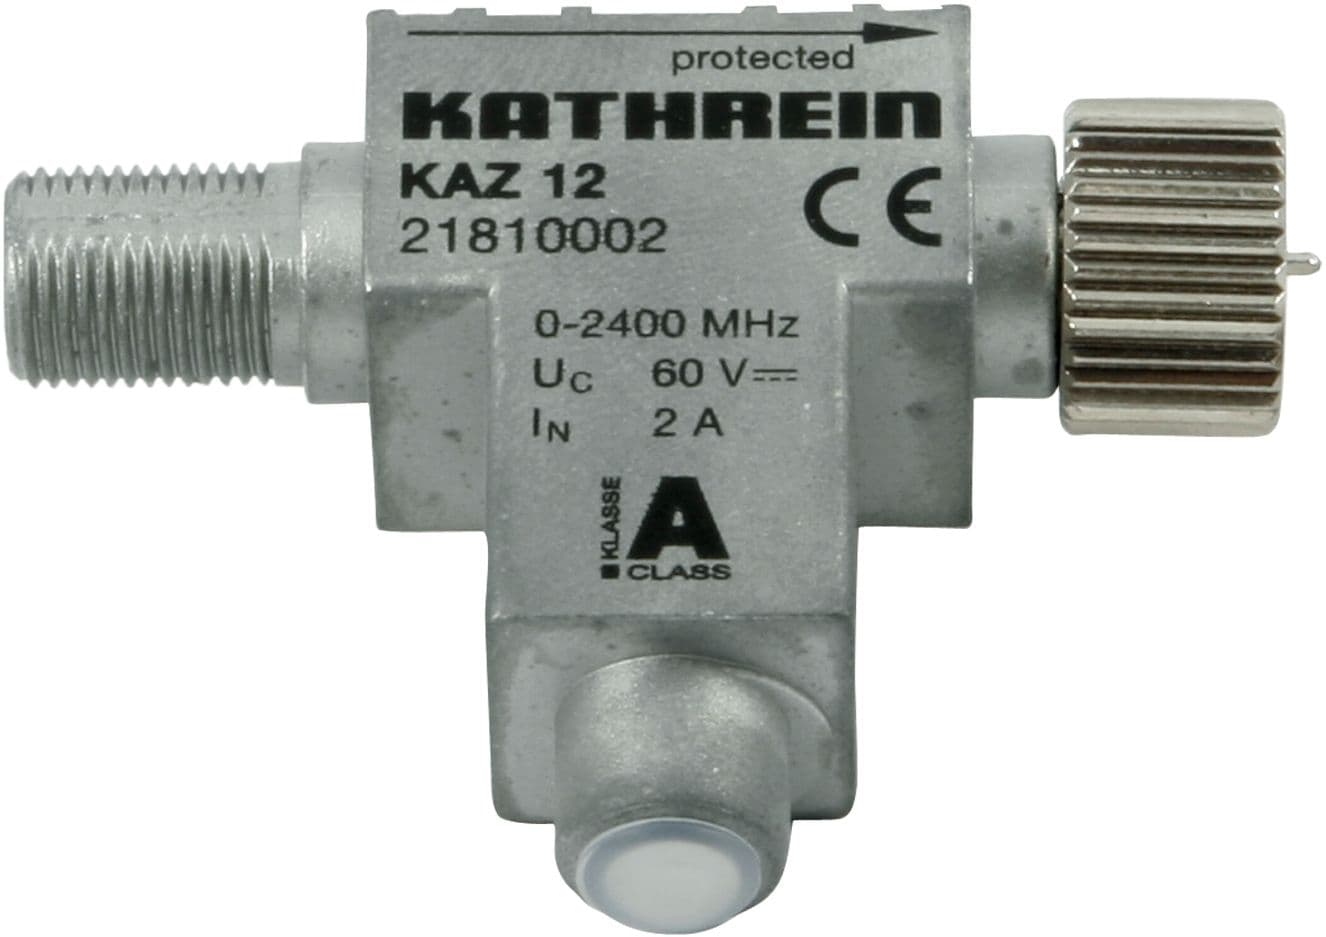 Kathrein KAZ12 Blitzstromableiter, Grobschutz für Anlagen